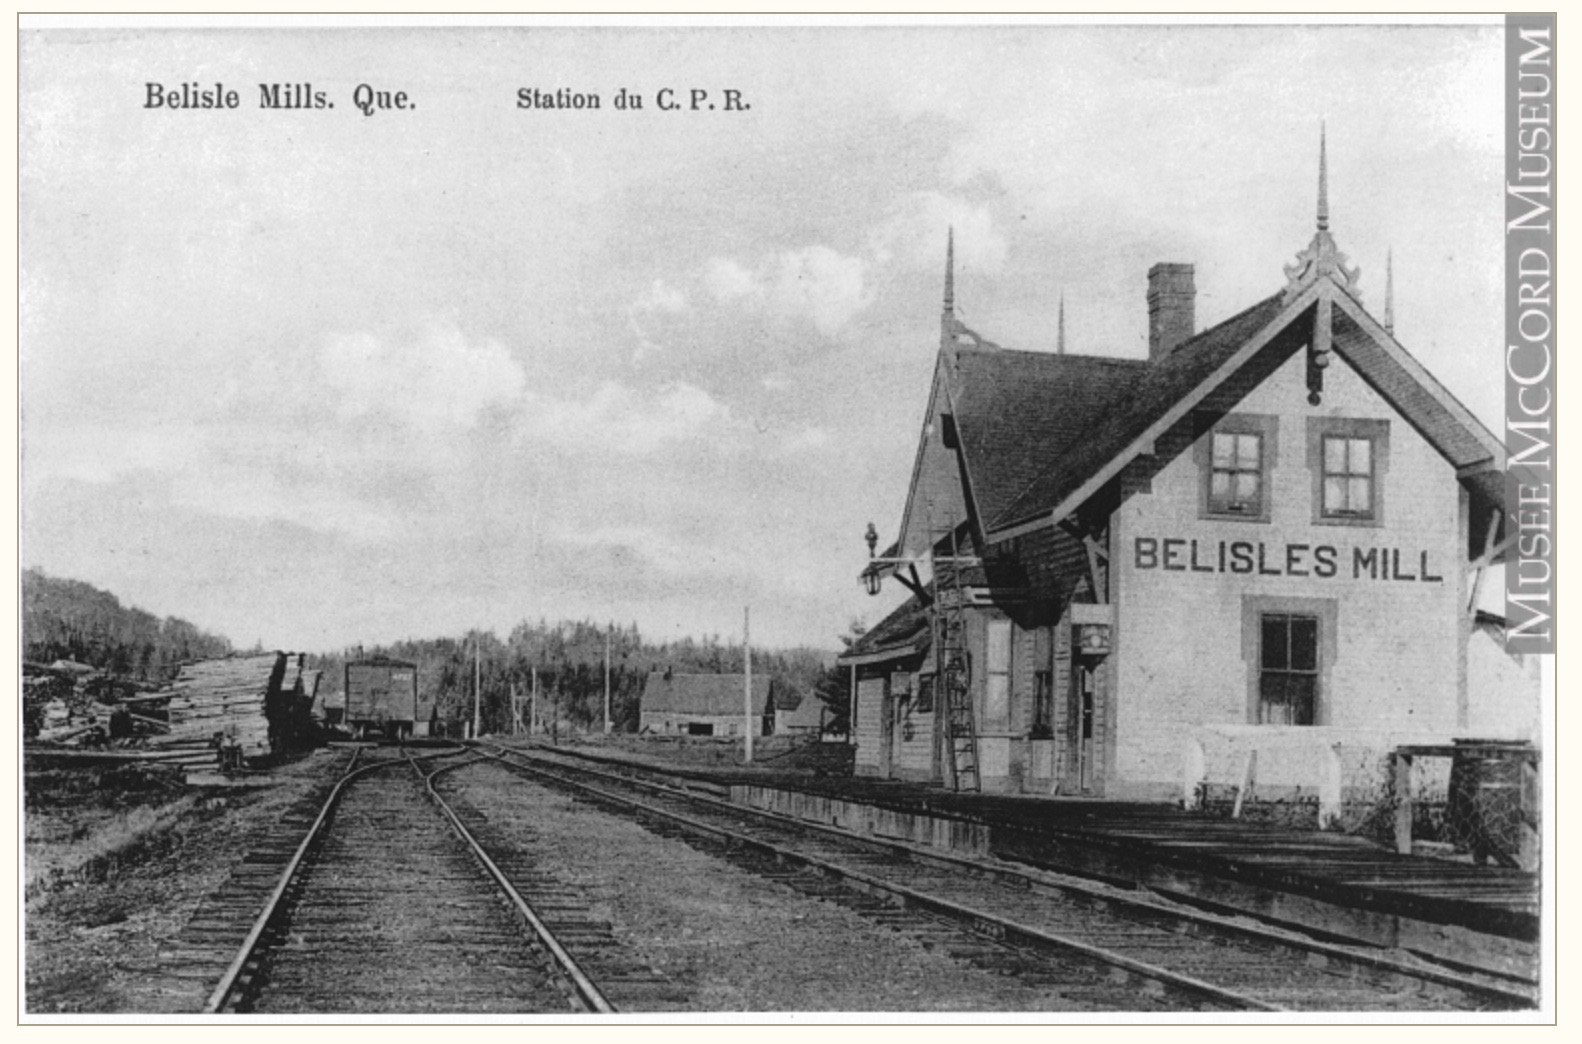 Carte postale ancienne illustrant la gare ferroviaire de Bélisle’s Mills; on y remarque l’édifice, les voies ferrées, les tas de bois prêts pour l’expédition.